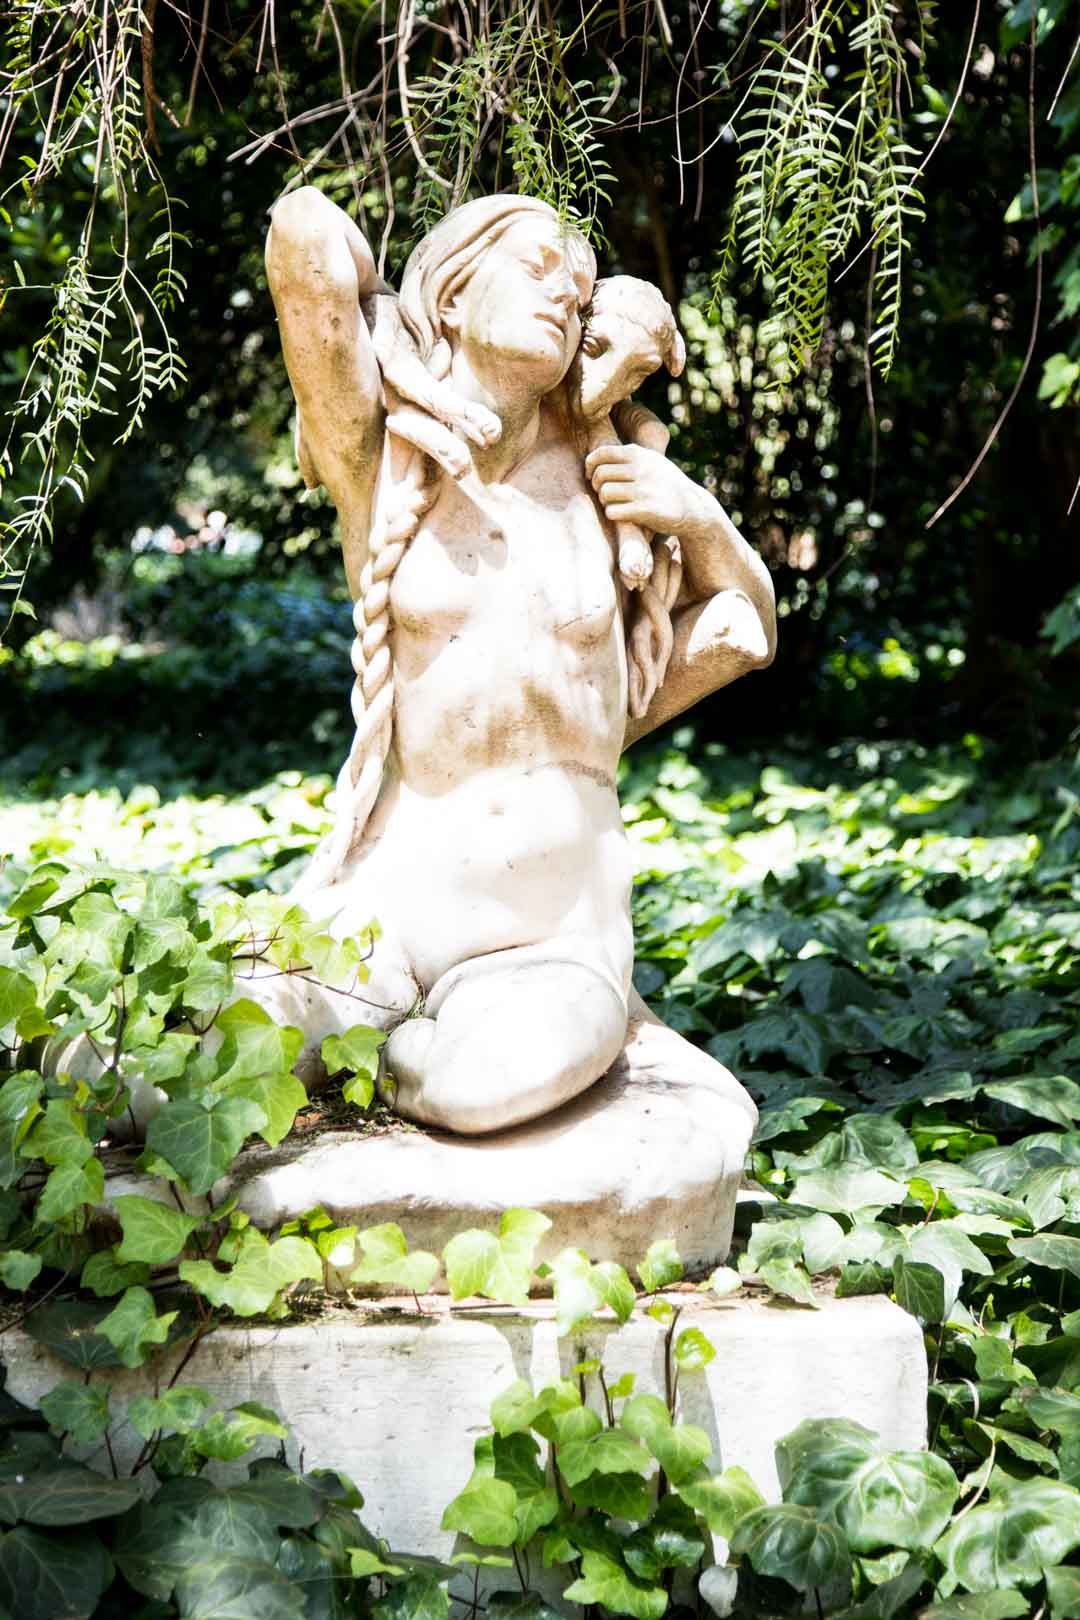 patsas Buenos Airesin kasvitieteellisessä puutarhassa